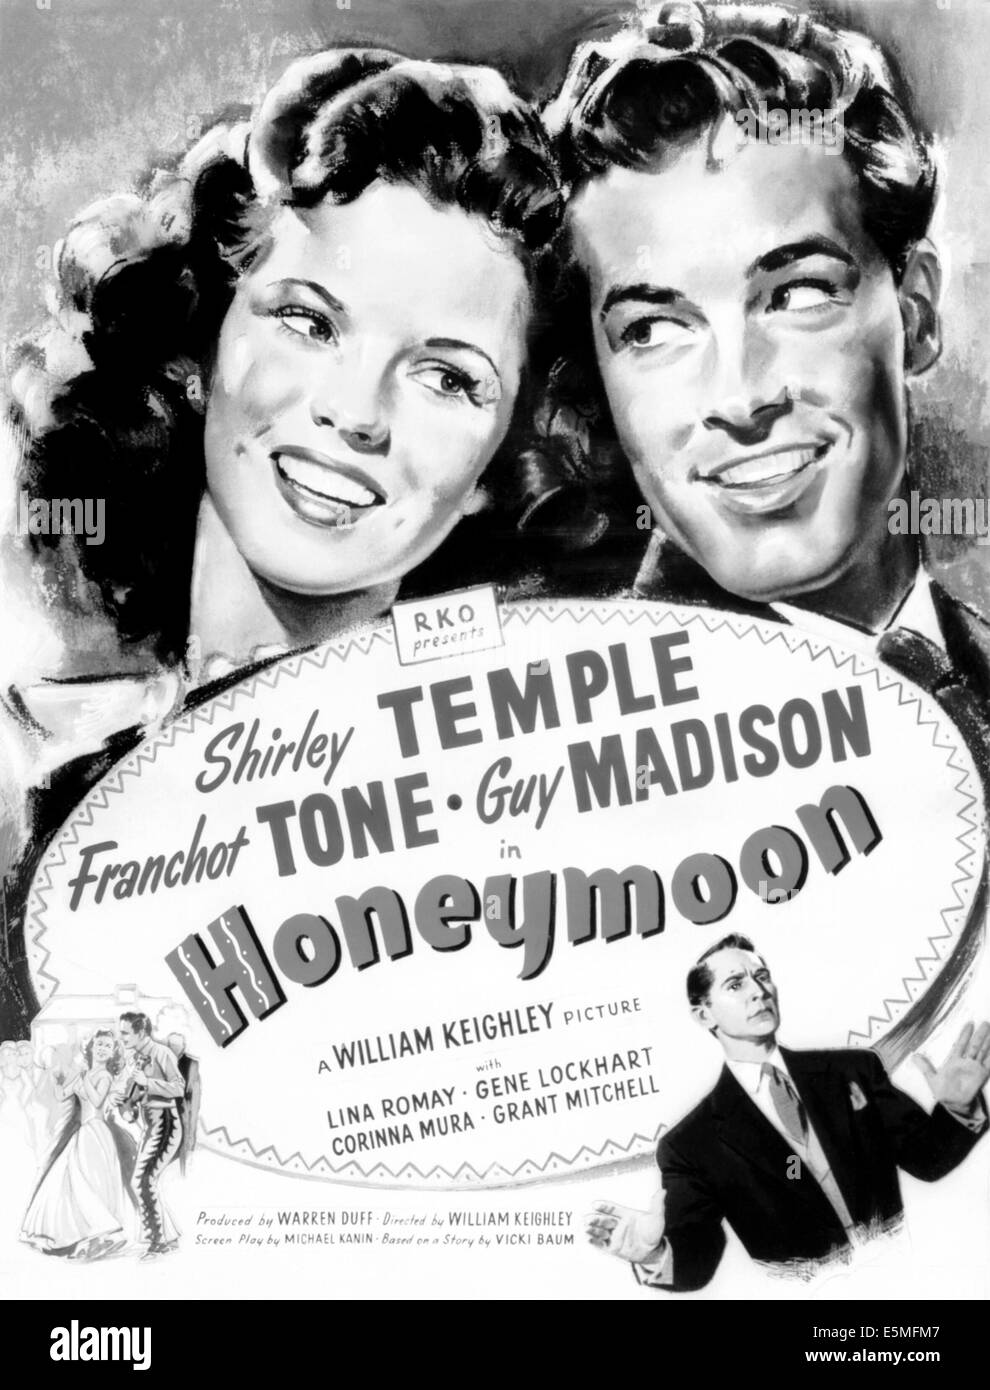 Luna de miel, la parte superior de izquierda a derecha: el templo de Shirley, Guy Madison, en la parte inferior derecha: Franchot Tone, 1947 Foto de stock